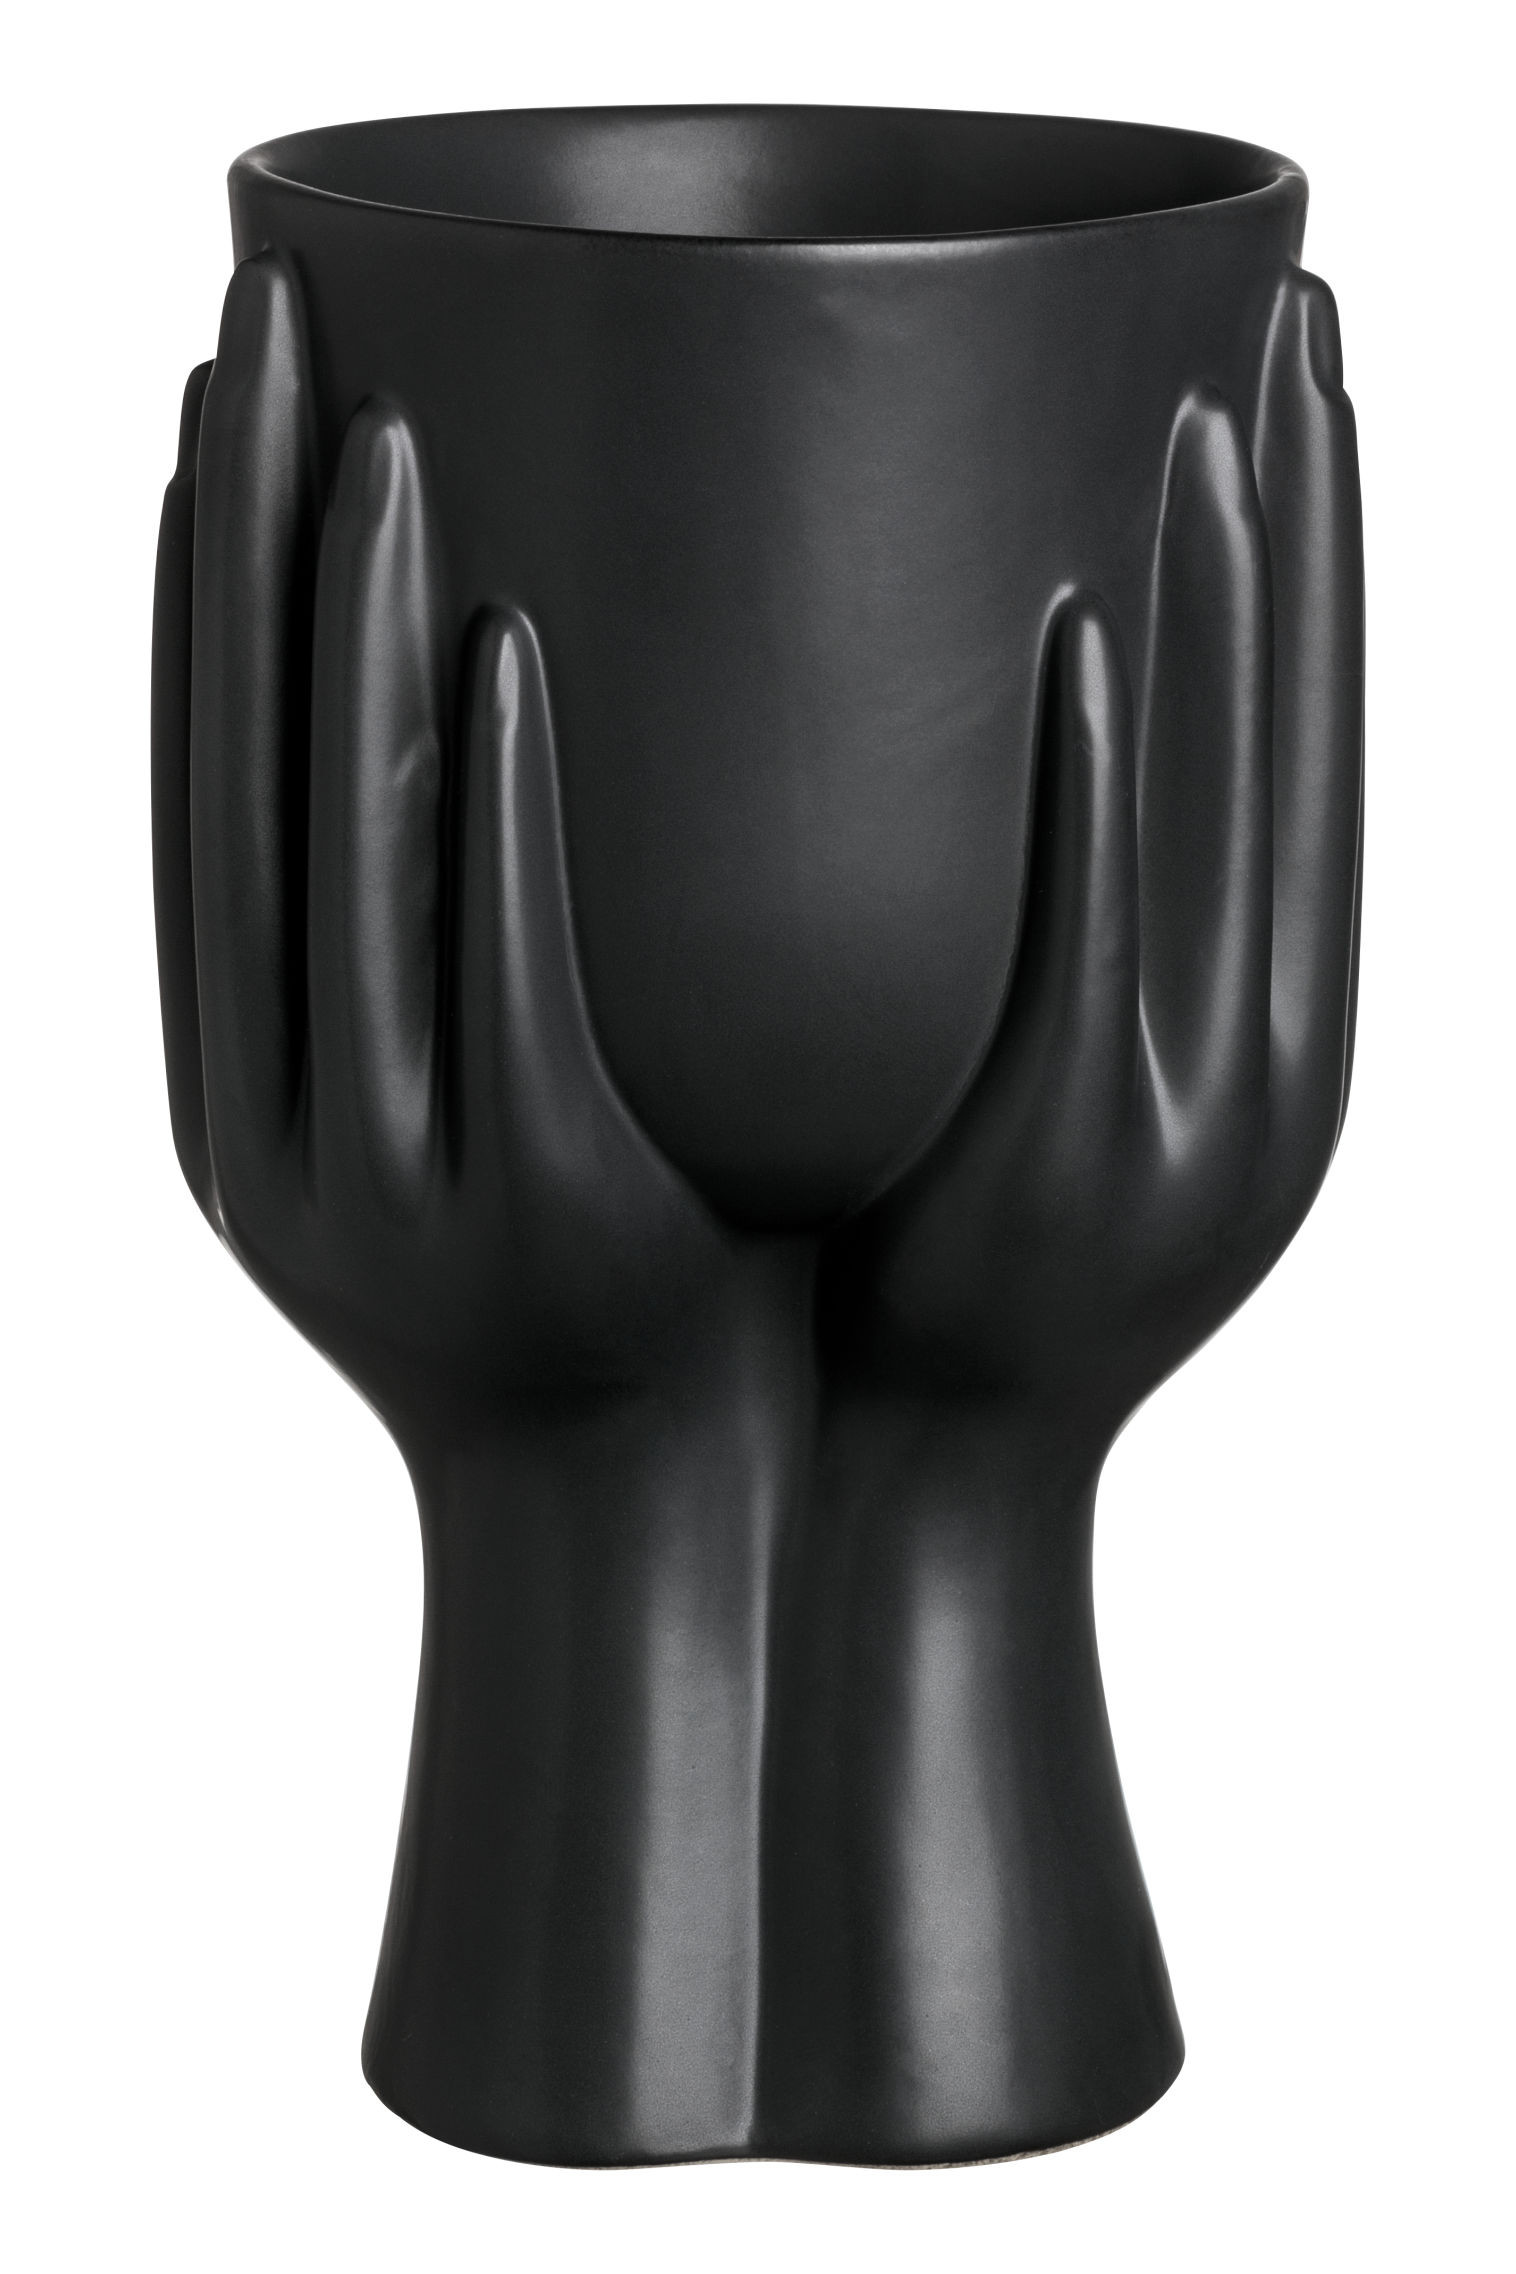 plastic vase with lid of stoneware vase black hm us within hmgoepprod